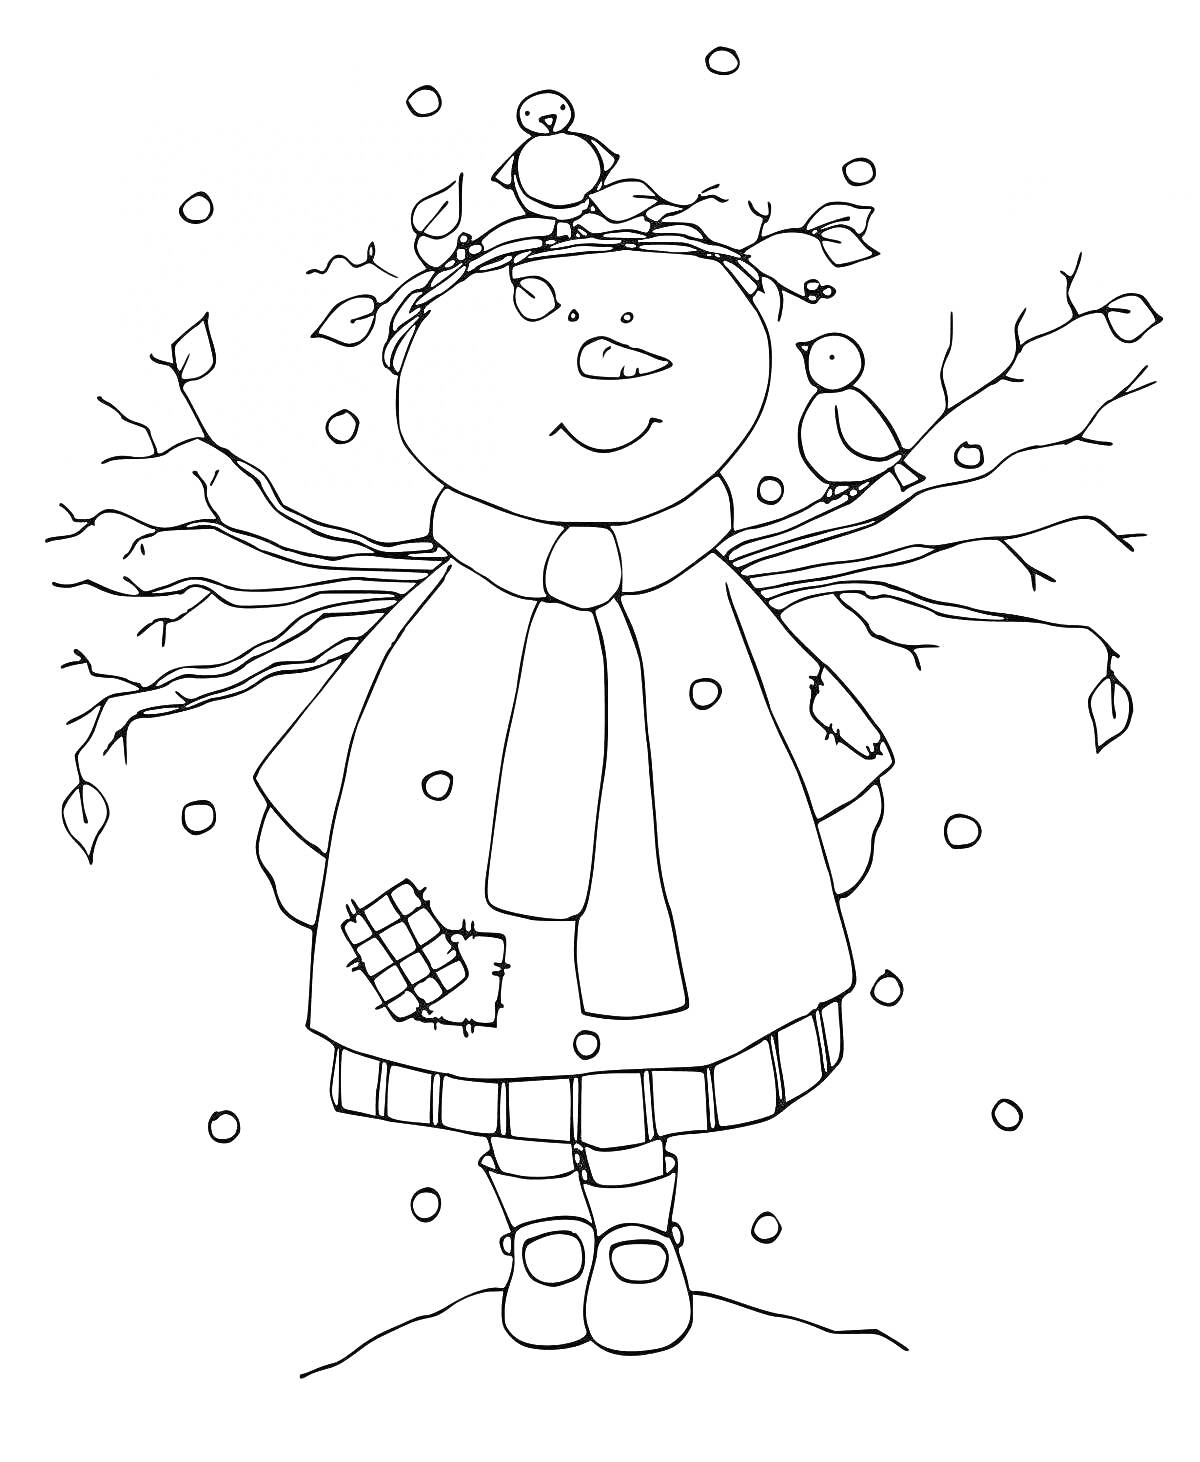 Раскраска Снежная баба с шарфом и птицами на ветках, в заплатанном пальто и в сапогах, с падающим снегом